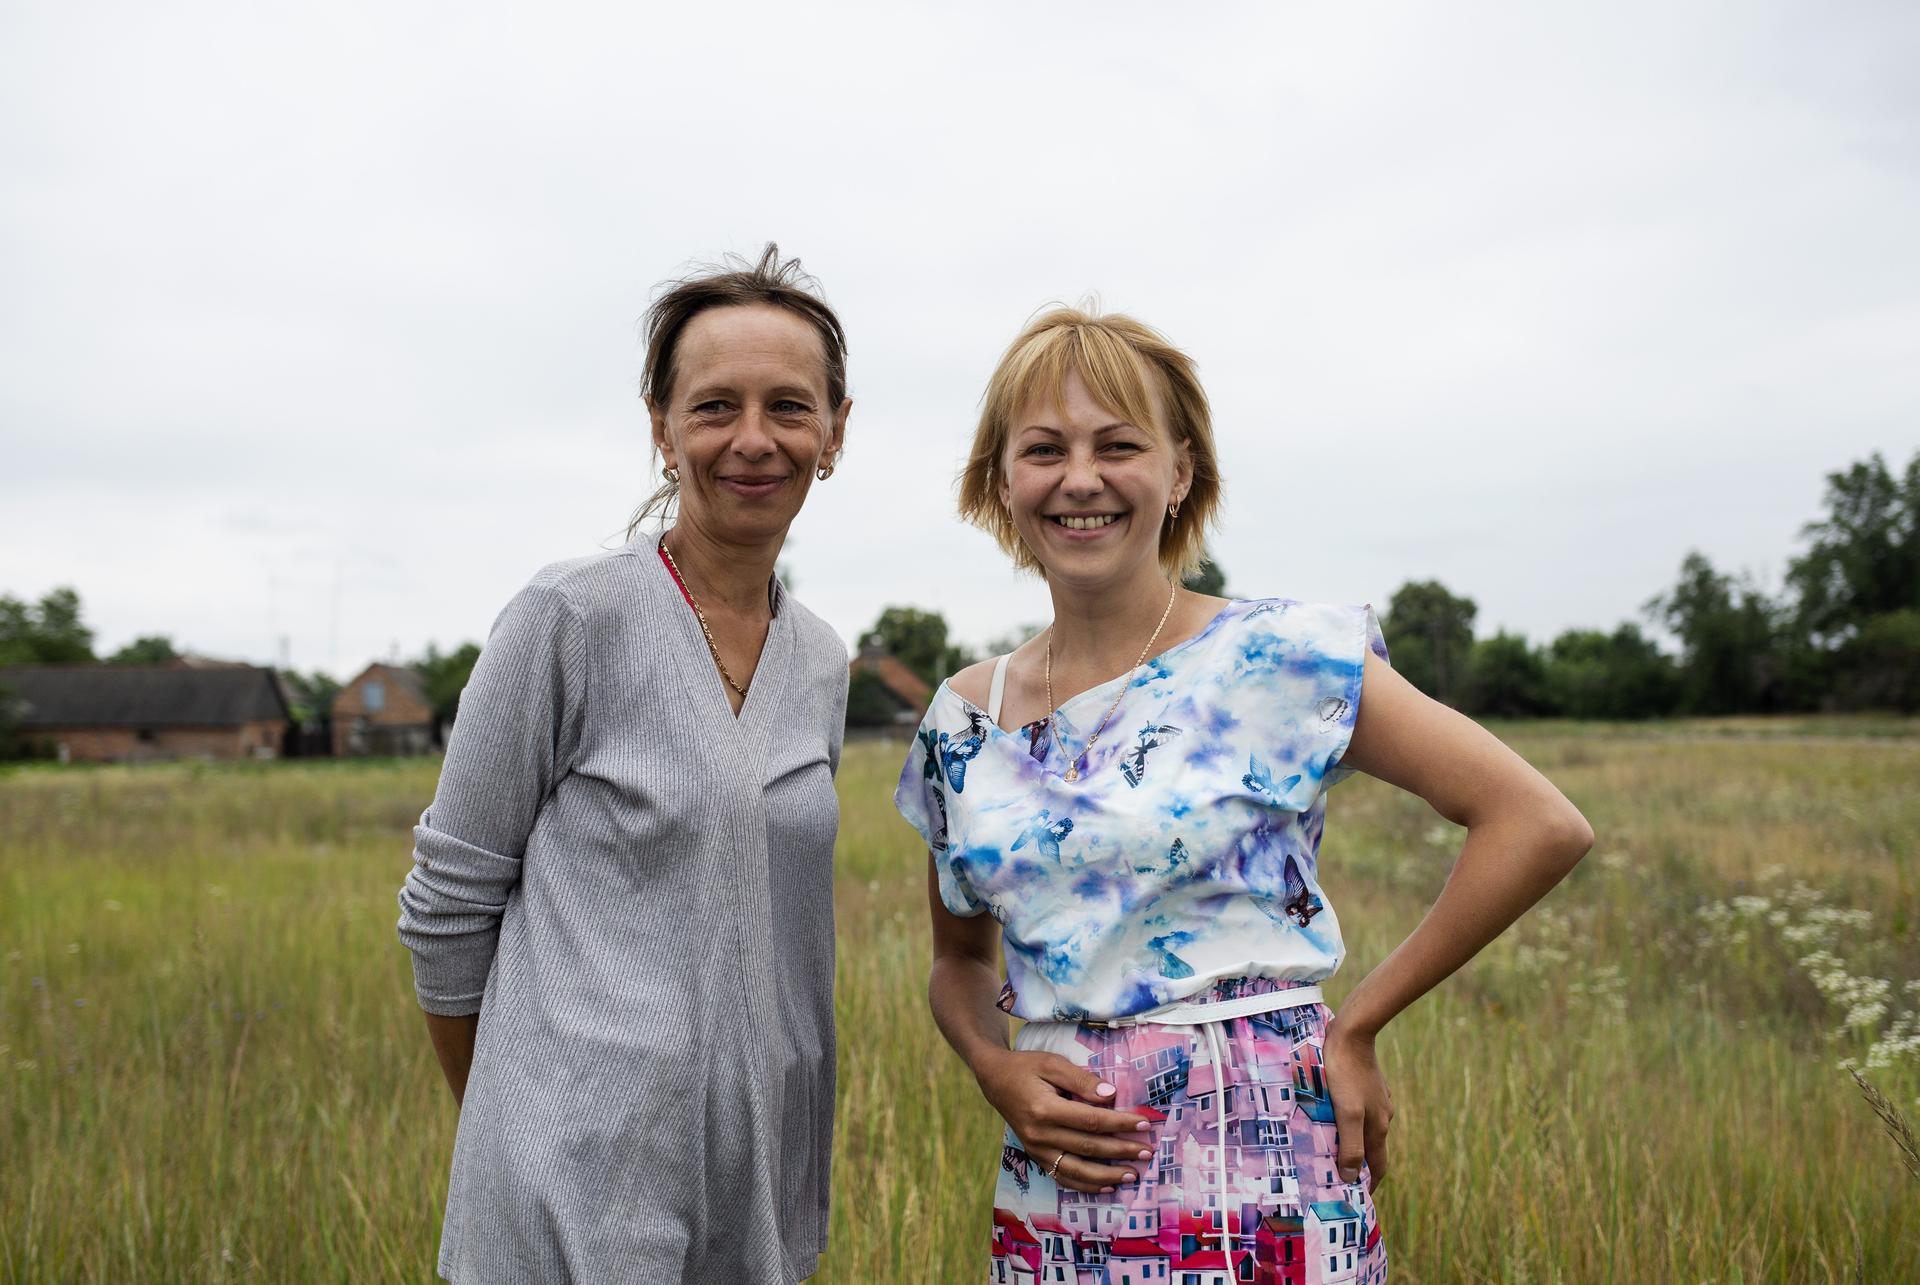 Two women in a field